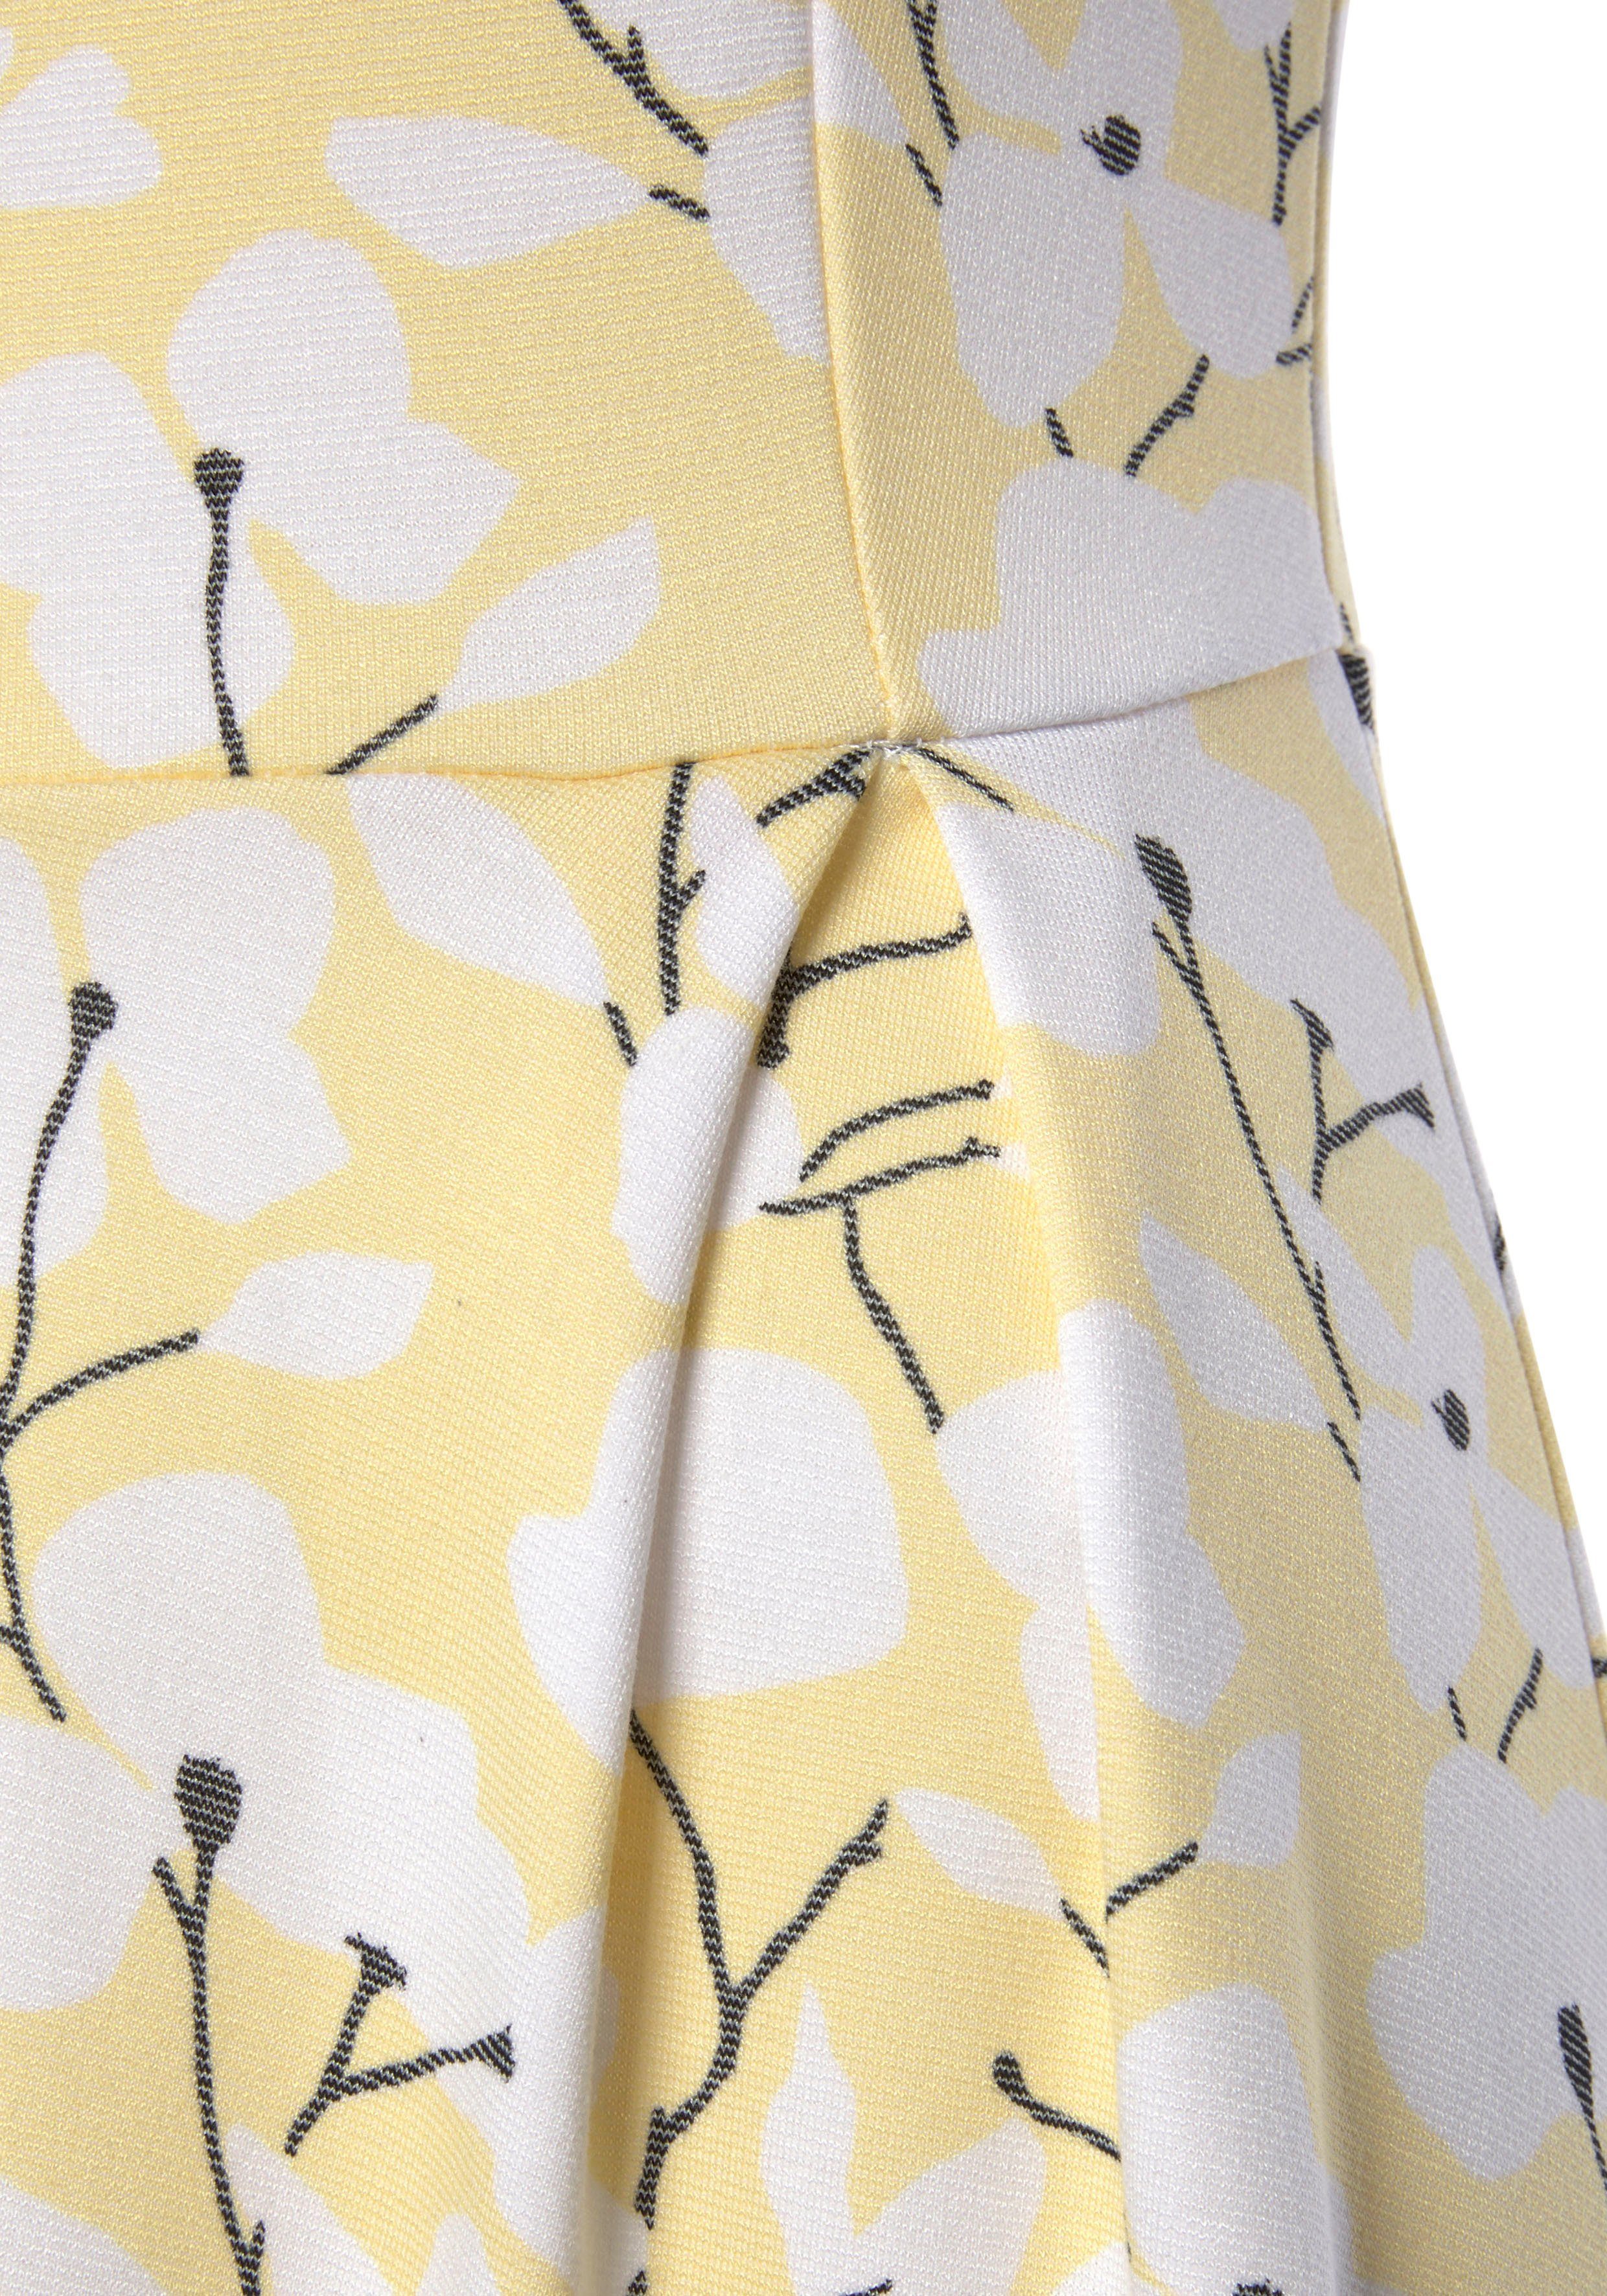 Strandbekleidung Blumendruck, gelb-creme-bedruckt Beachtime Sommerkleid Strandmode, mit